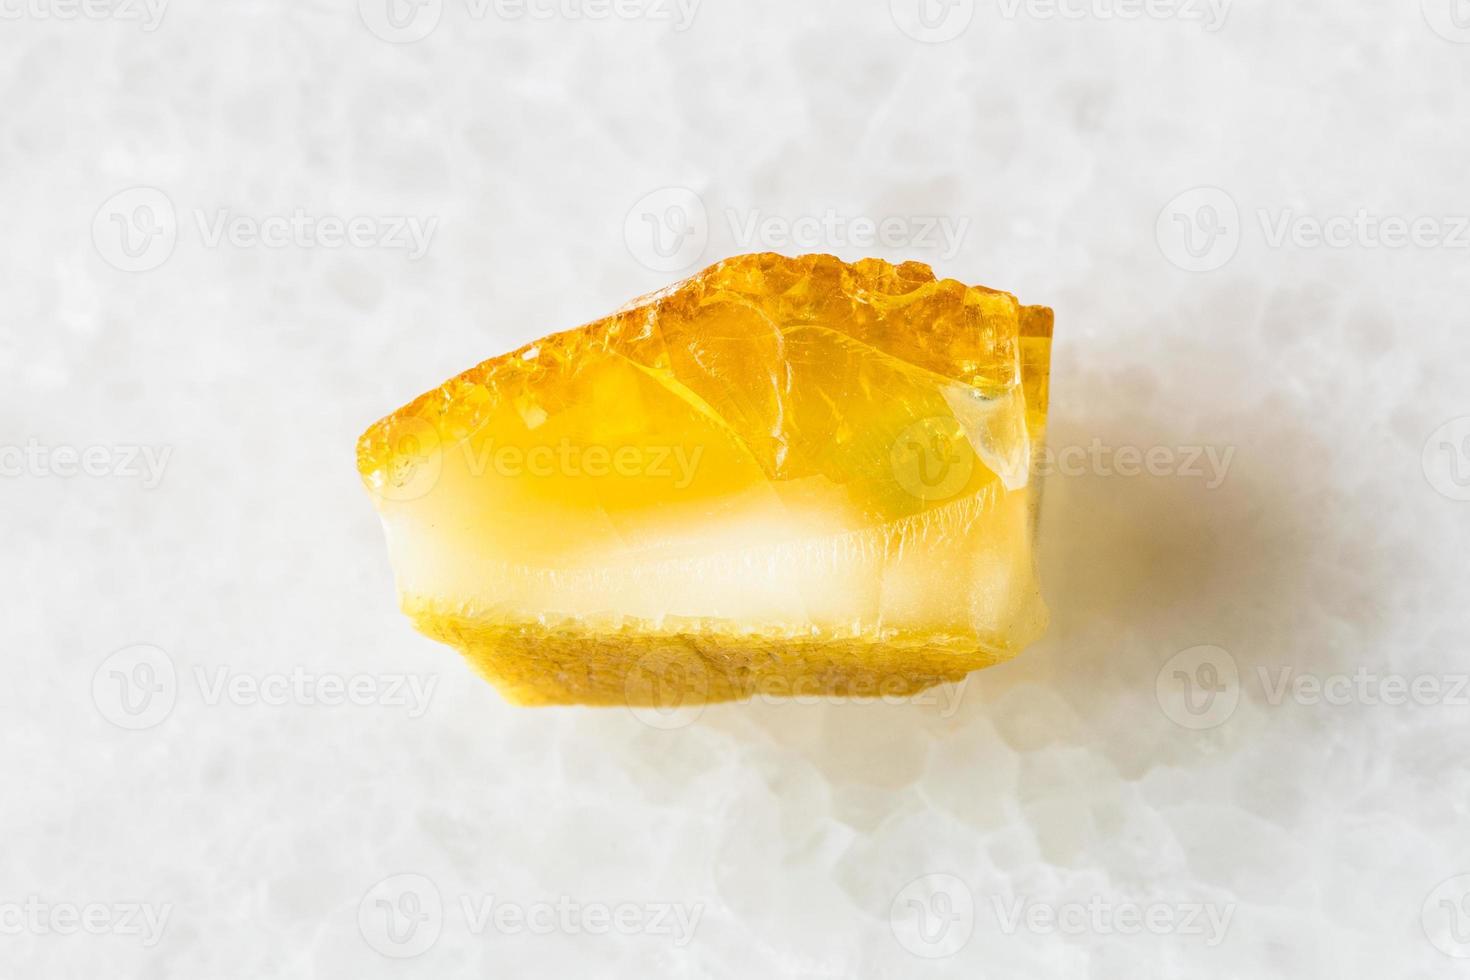 pedra preciosa âmbar amarela não polida em mármore branco foto